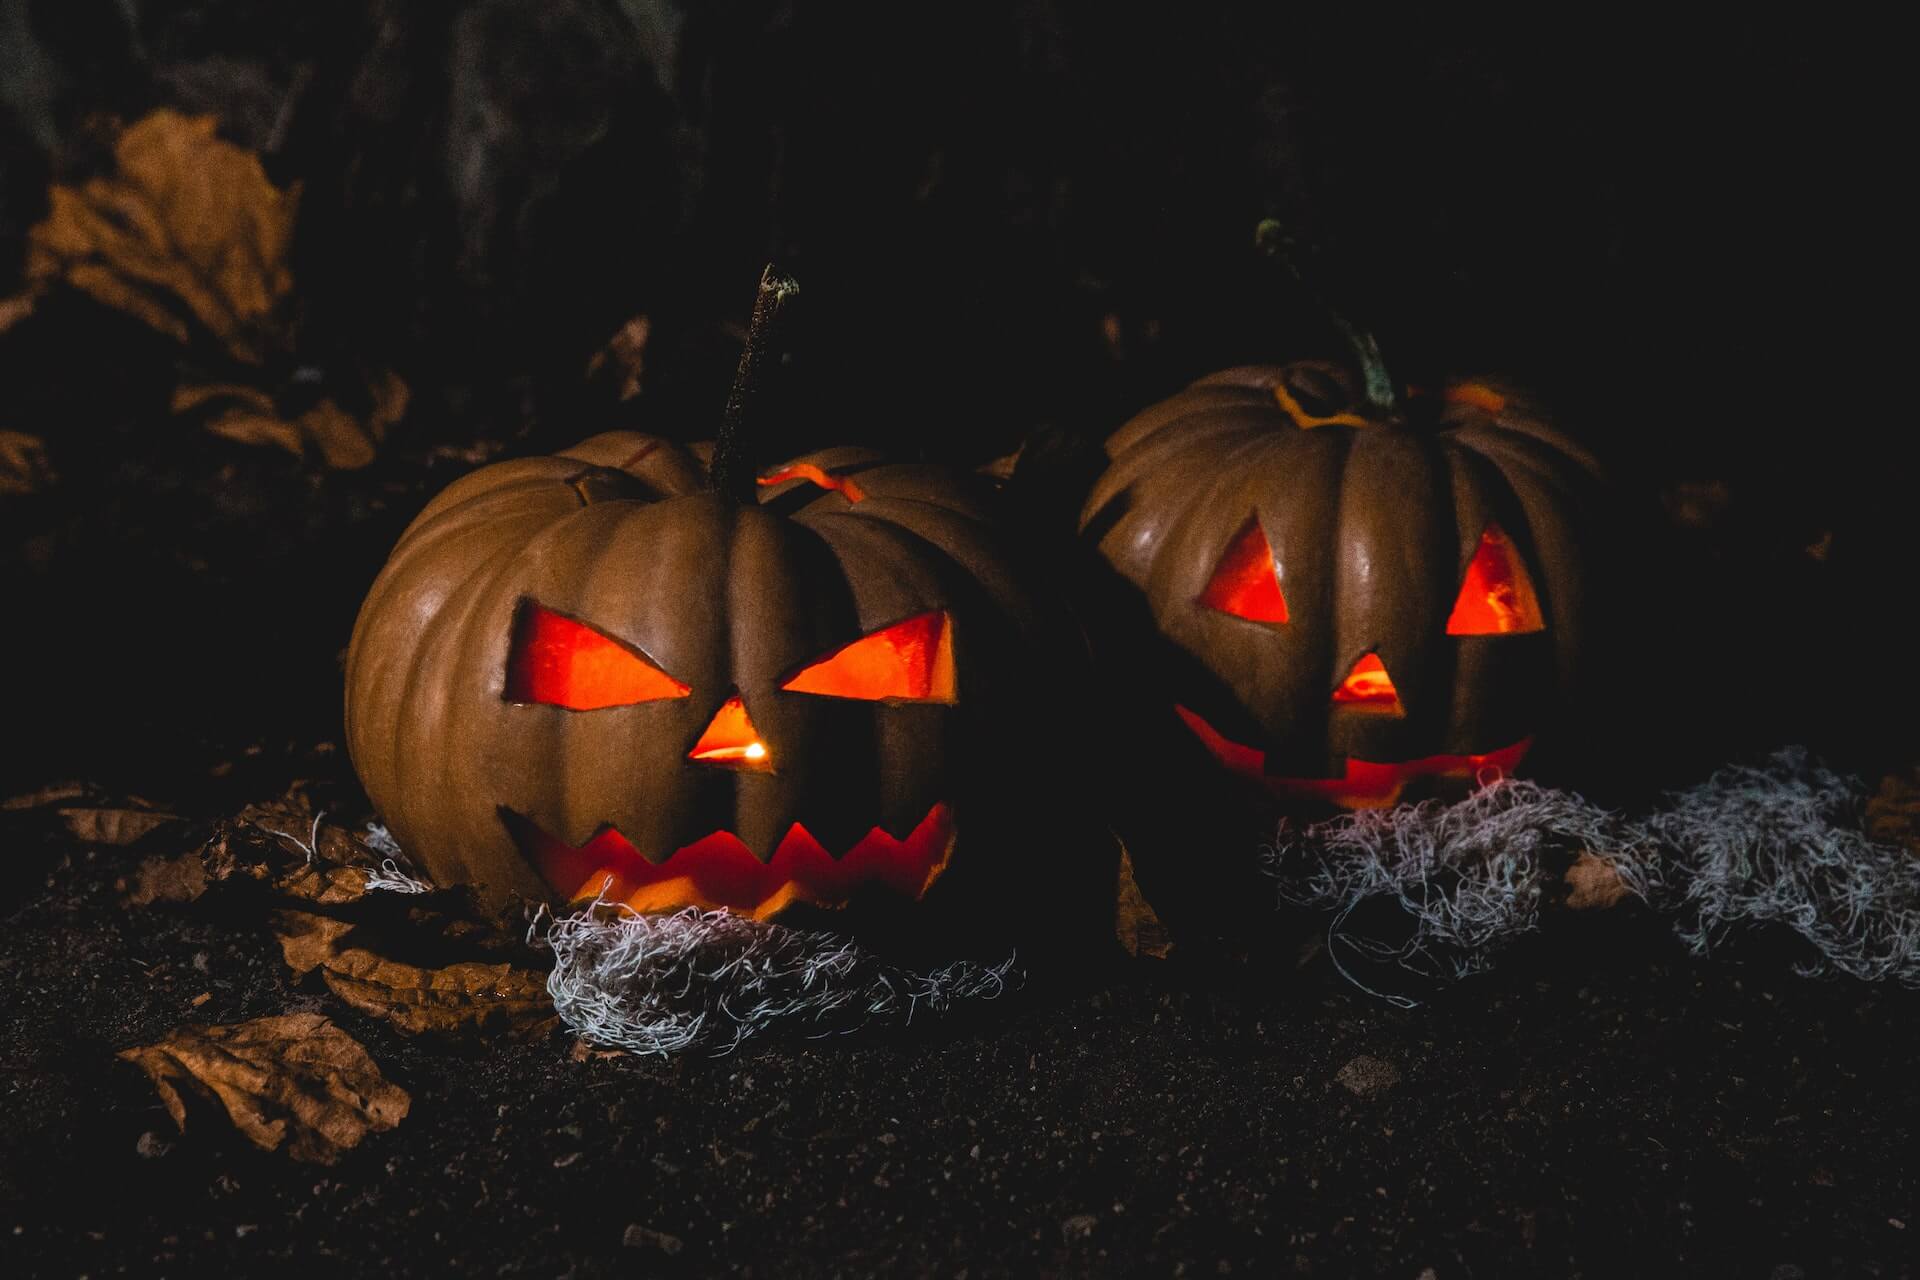 Two horror pumpkins